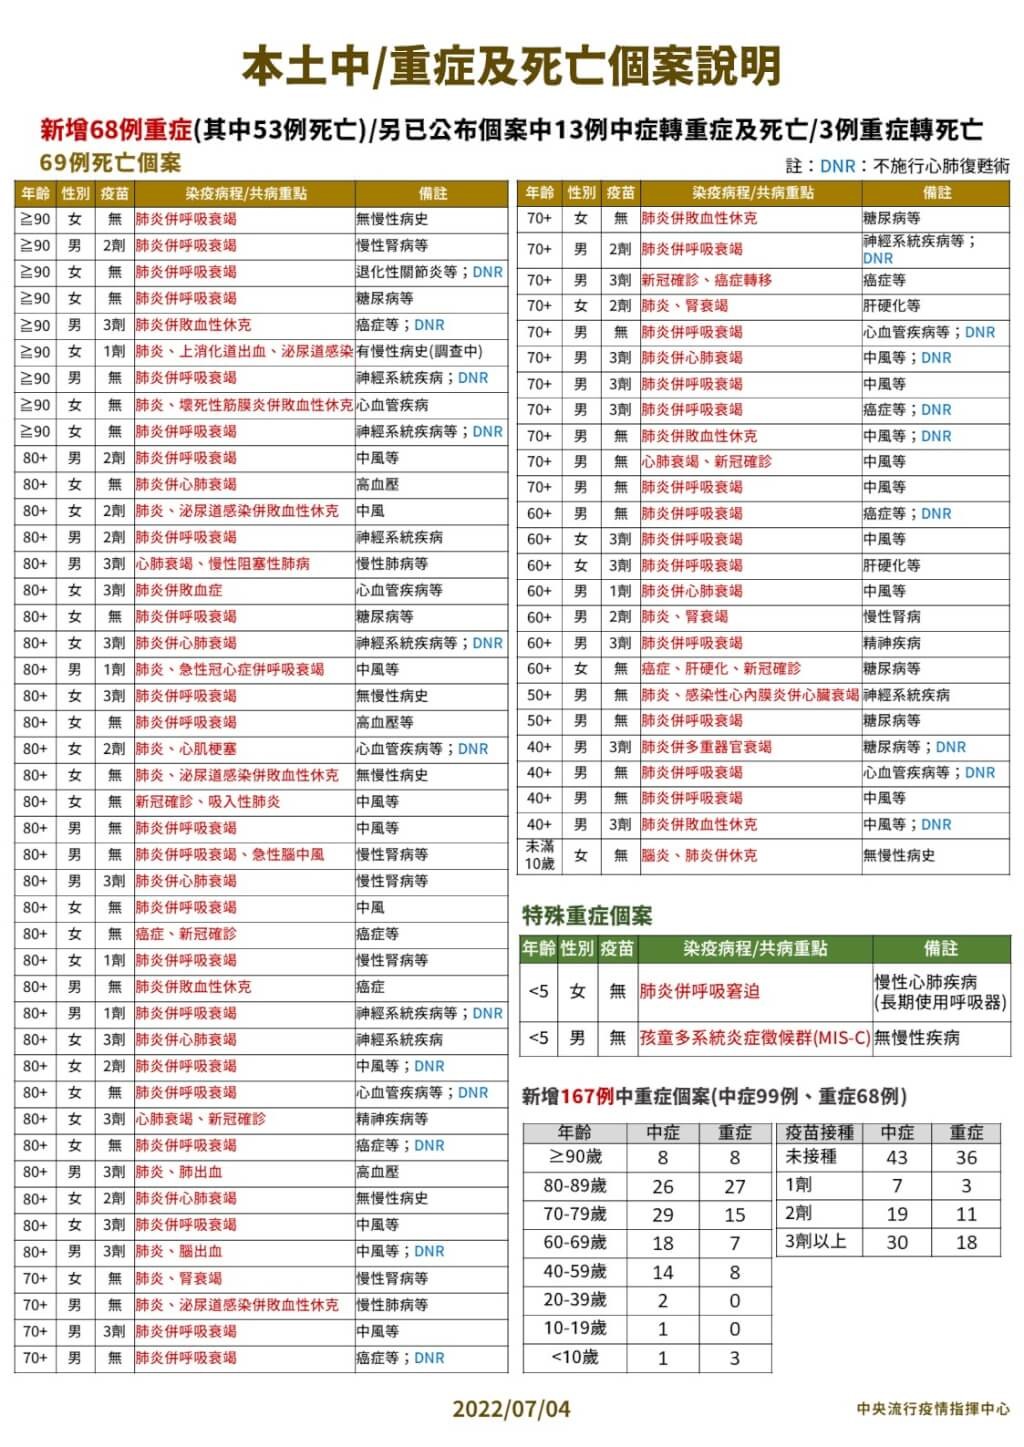 7/4台灣本土+23045　死亡+69　BNT兒童疫苗全數到貨共220.32萬劑